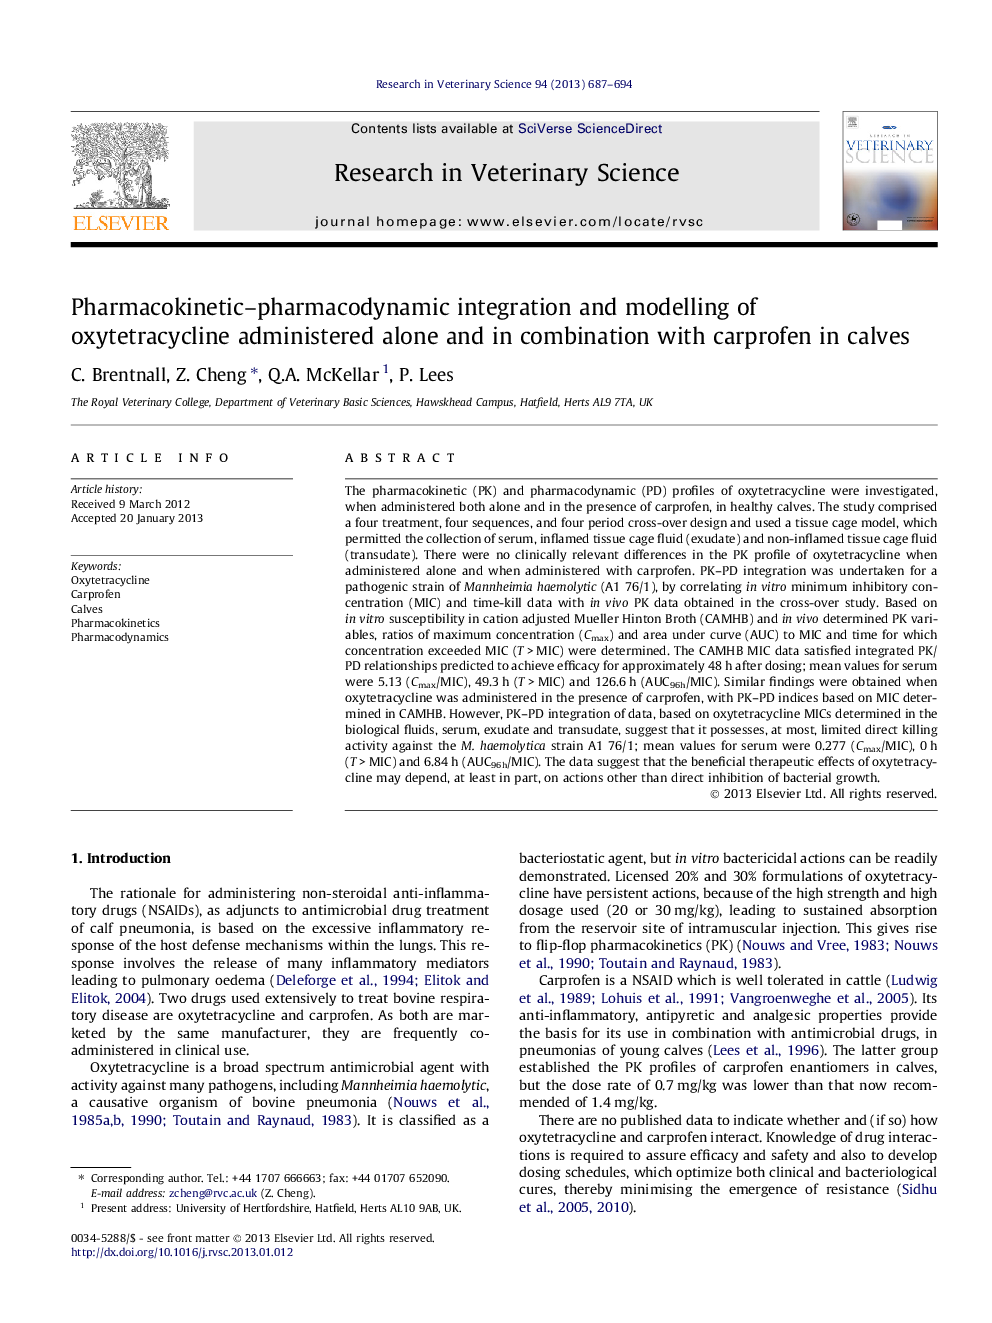 ادغام فارماکوکینتیک-فارماکودینامیک و مدل سازی اکسایت تری سایکلین به تنهایی و در ترکیب با کارپروفن در گوساله ها 